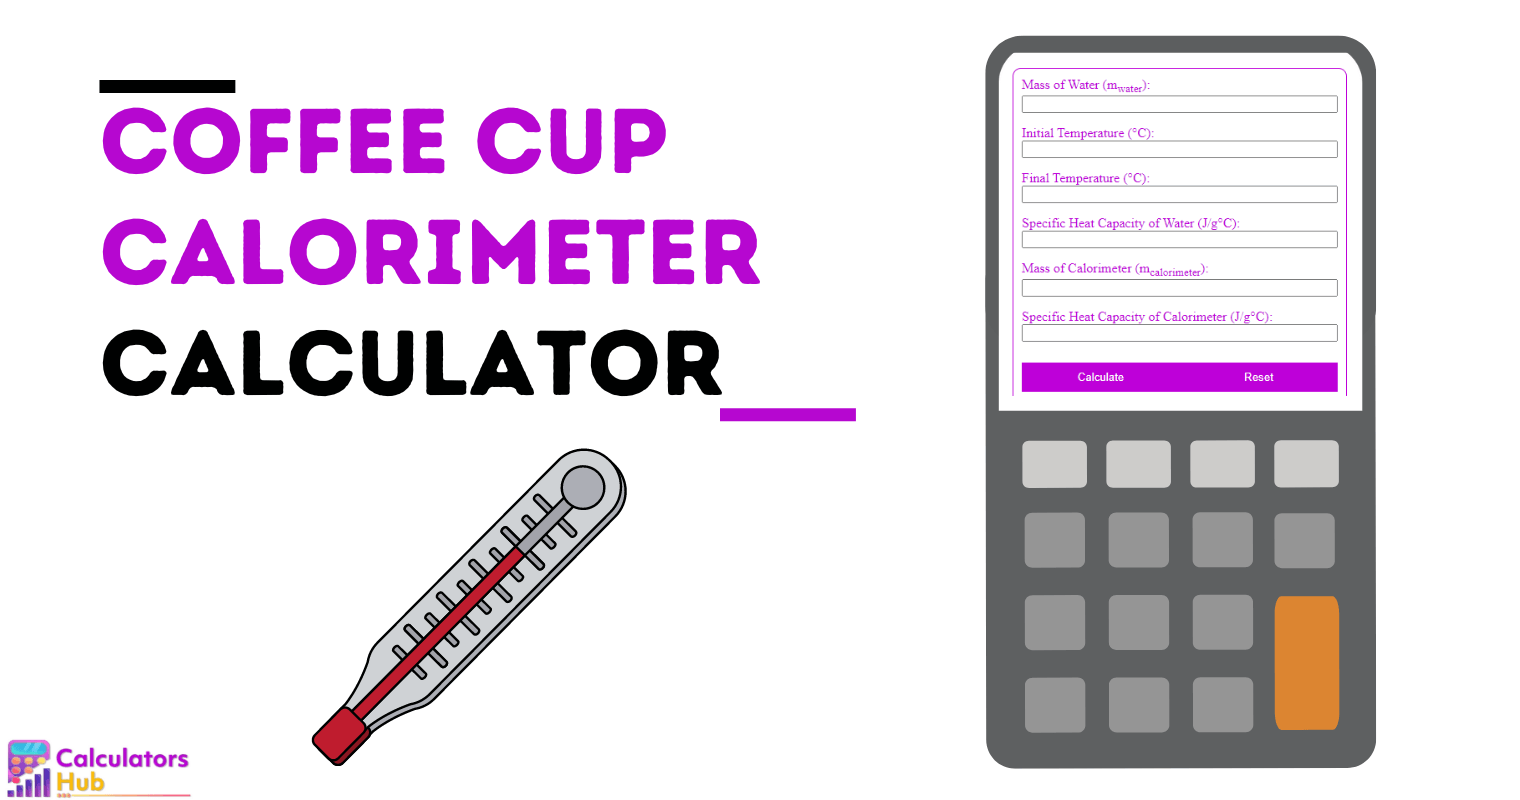 Coffee Cup Calorimeter Calculator